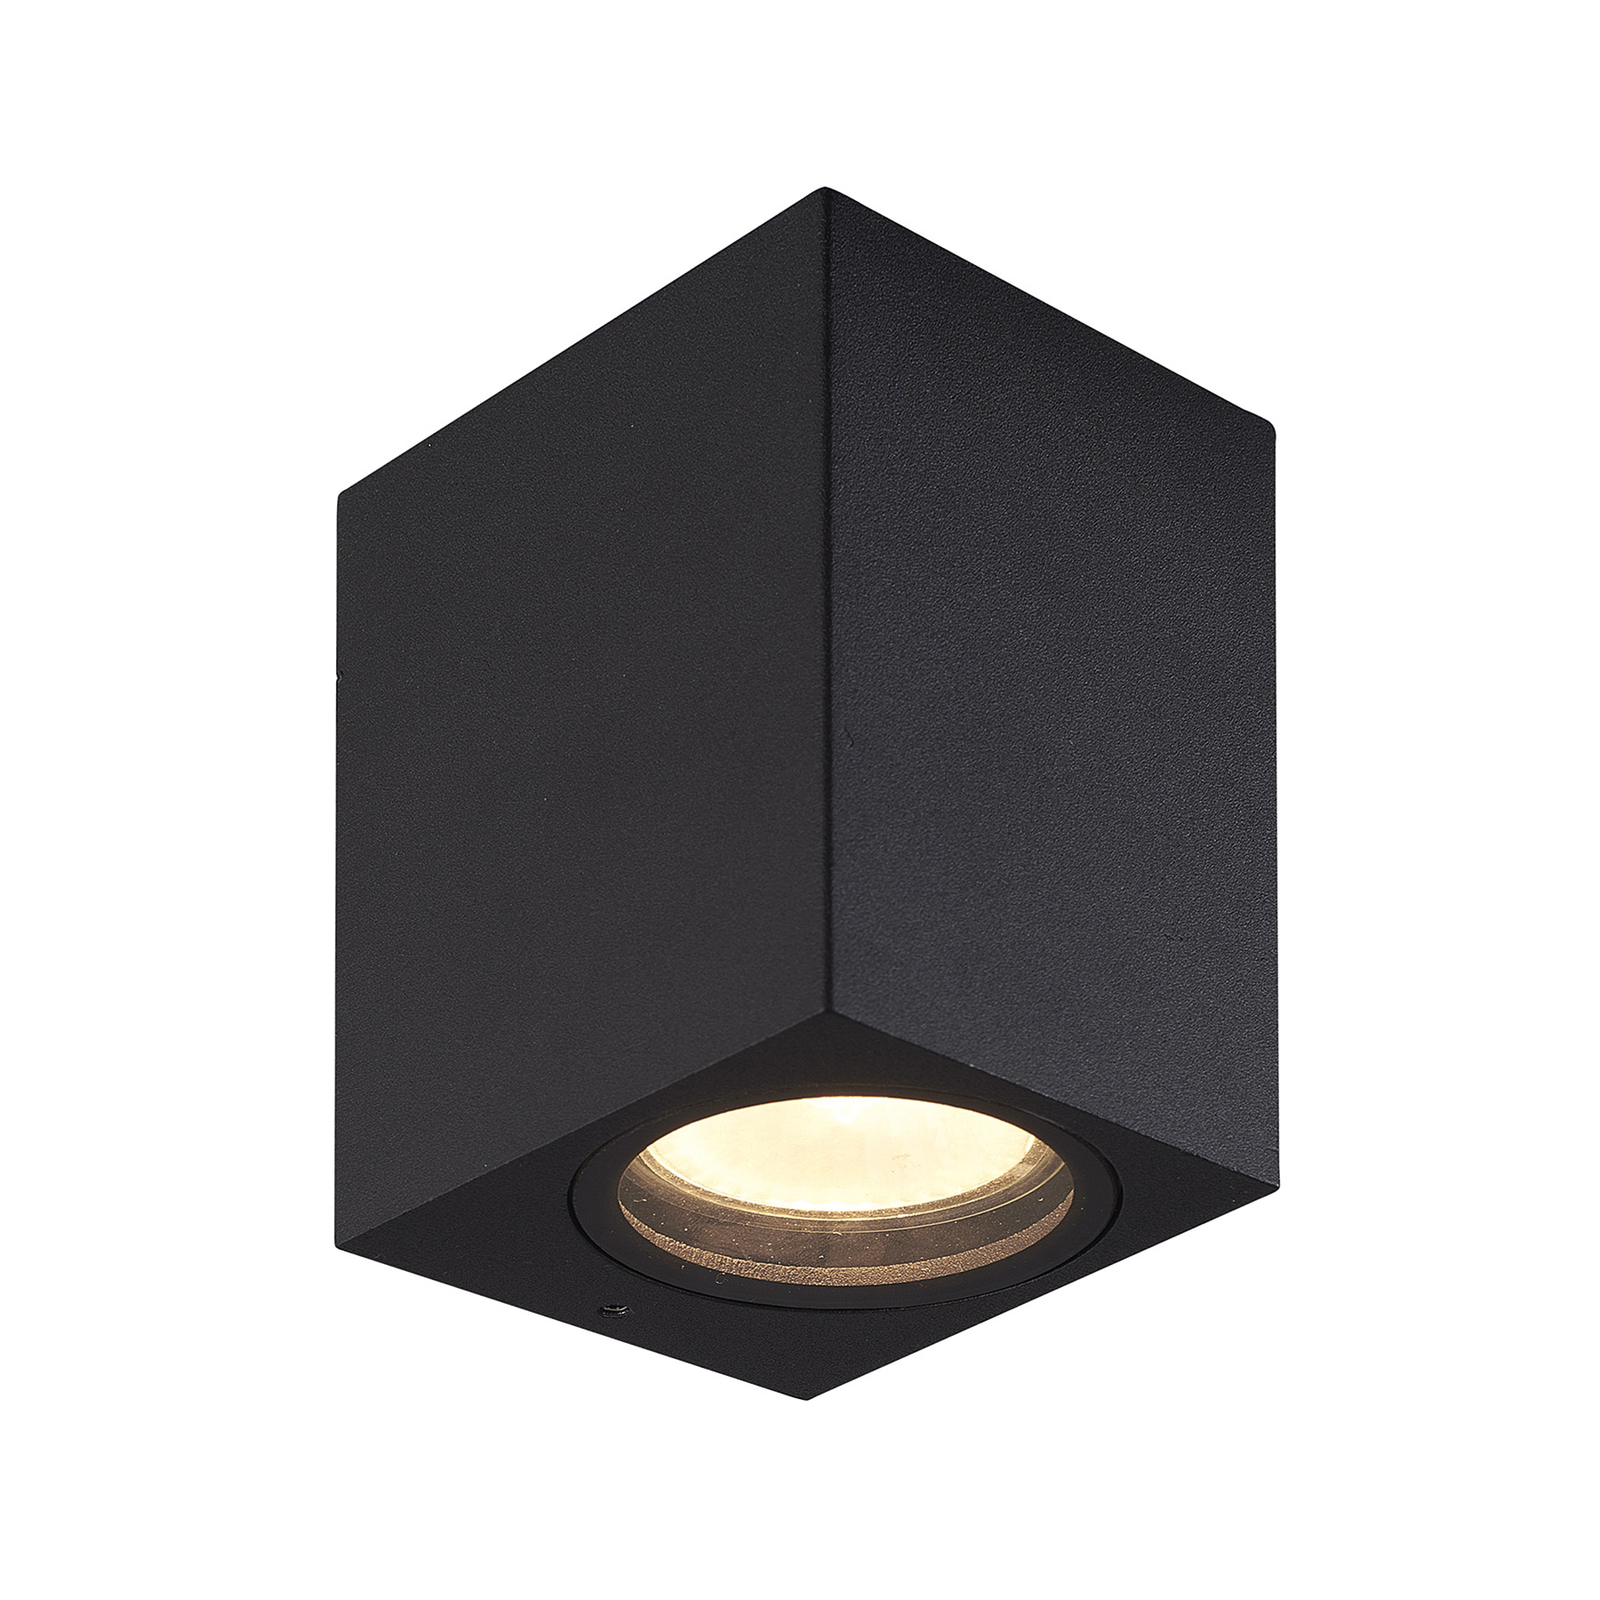 Prios kültéri fali lámpa Tetje, fekete, szögletes, 10 cm, 4 darabos szett